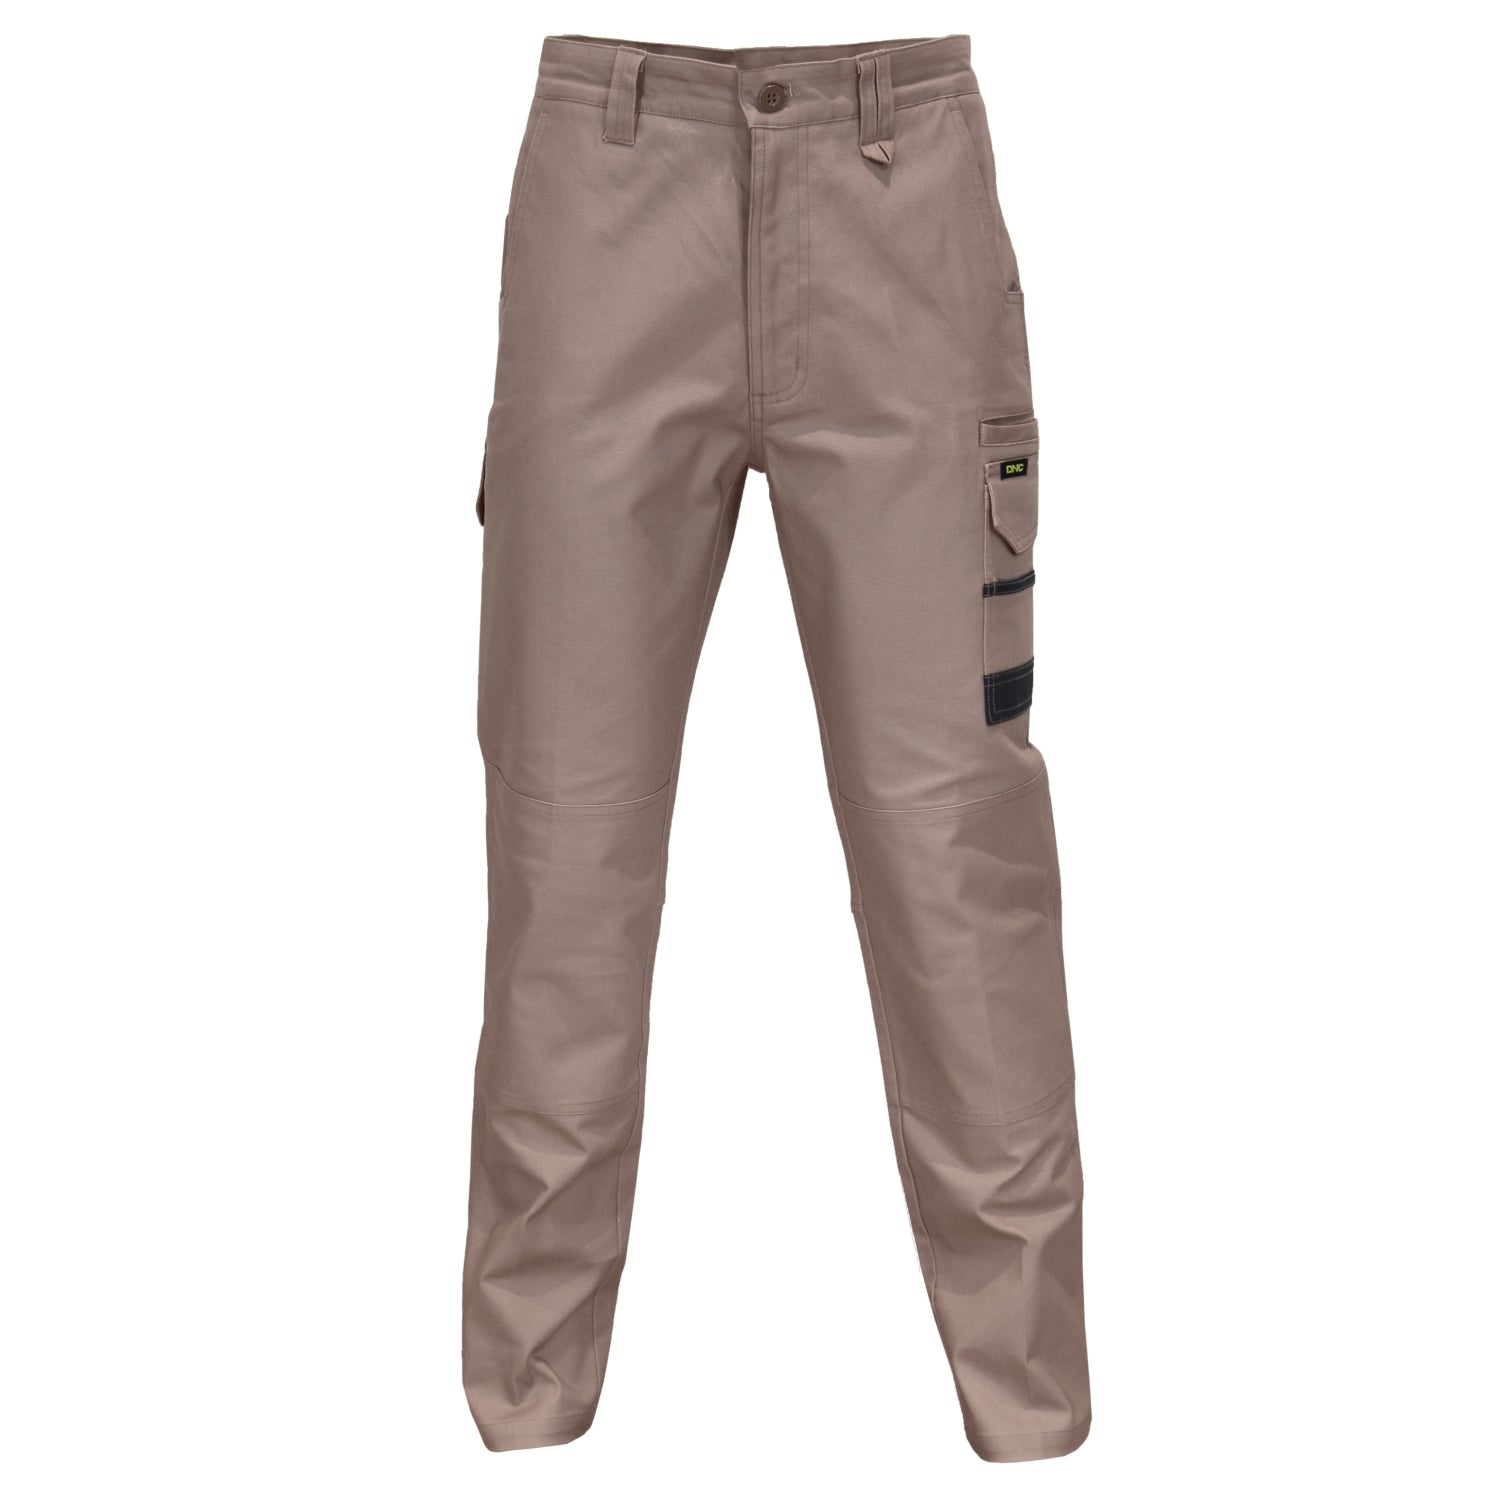 Slimflex Tradie Cargo Pants - 3375 Work Wear DNC Workwear Khaki 72R 